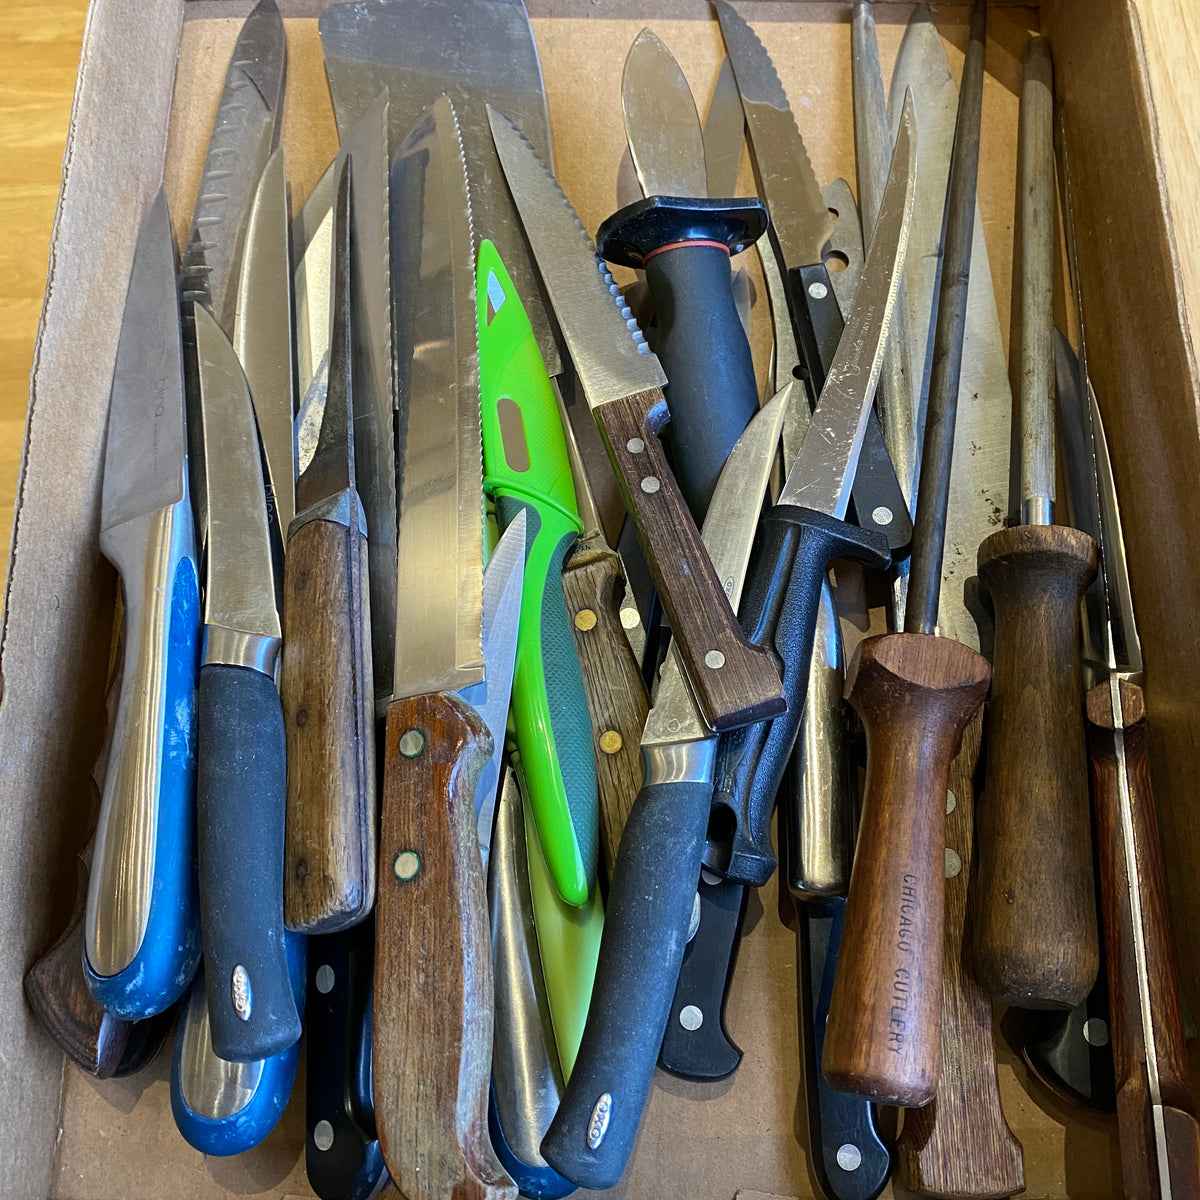 Bargain Bin Knife - $1 each